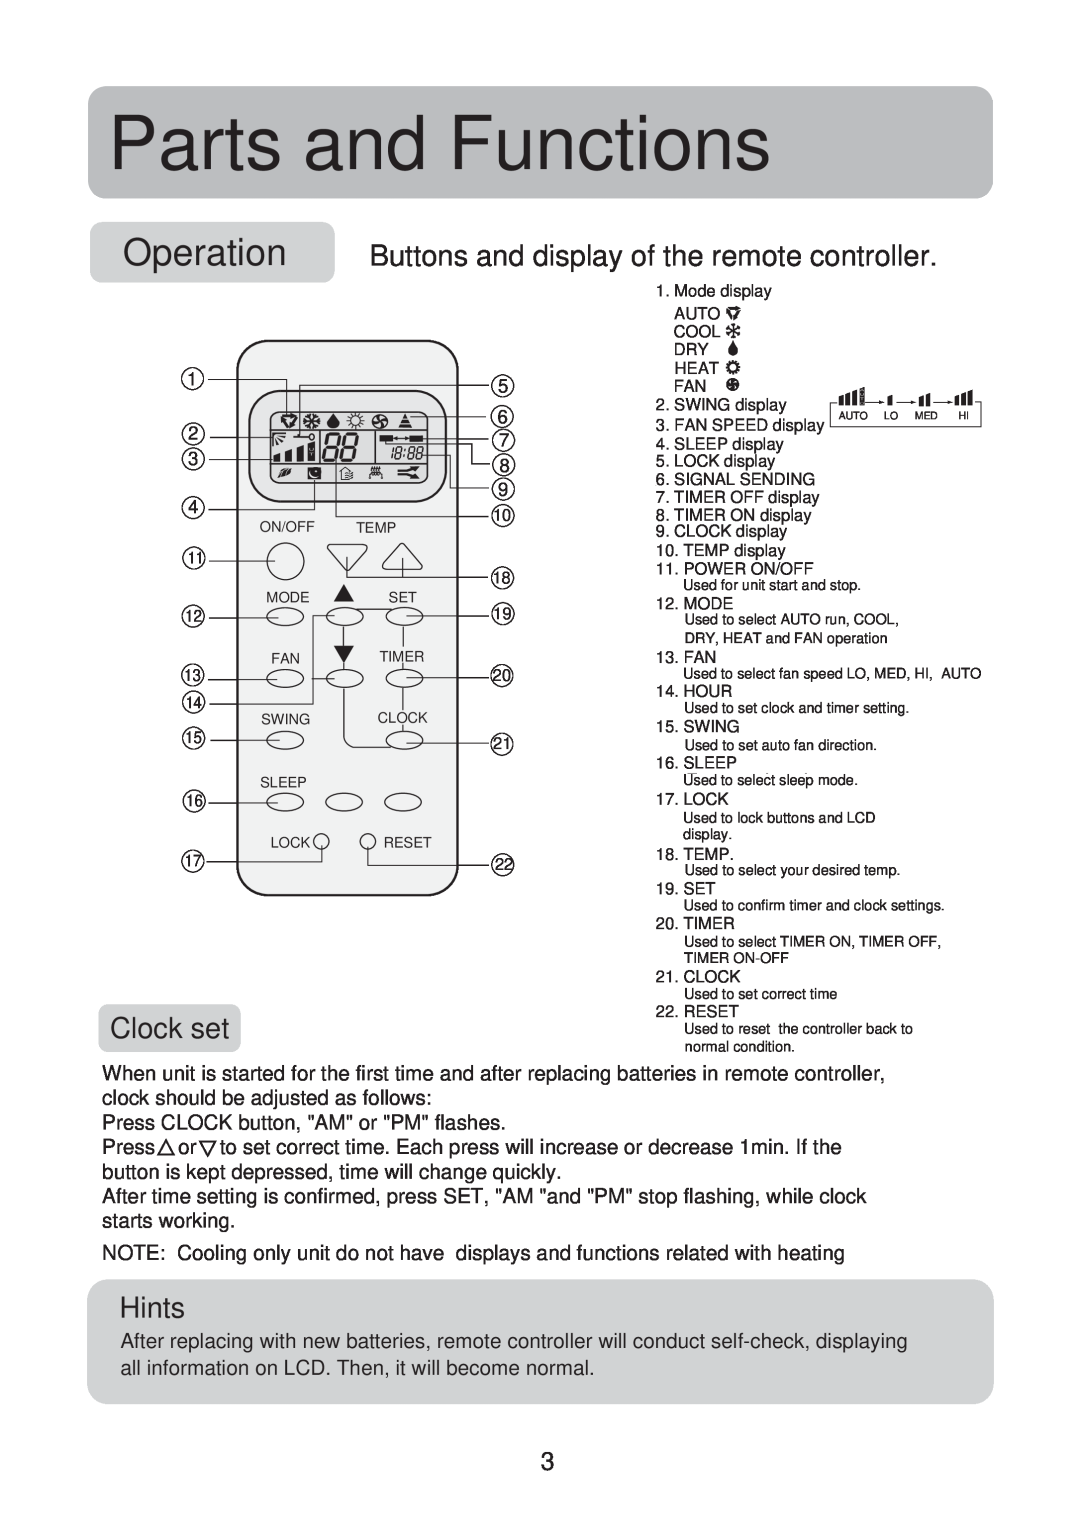 Haier No. 0010551809 operation manual Clock set, Hints, Parts and Functions 